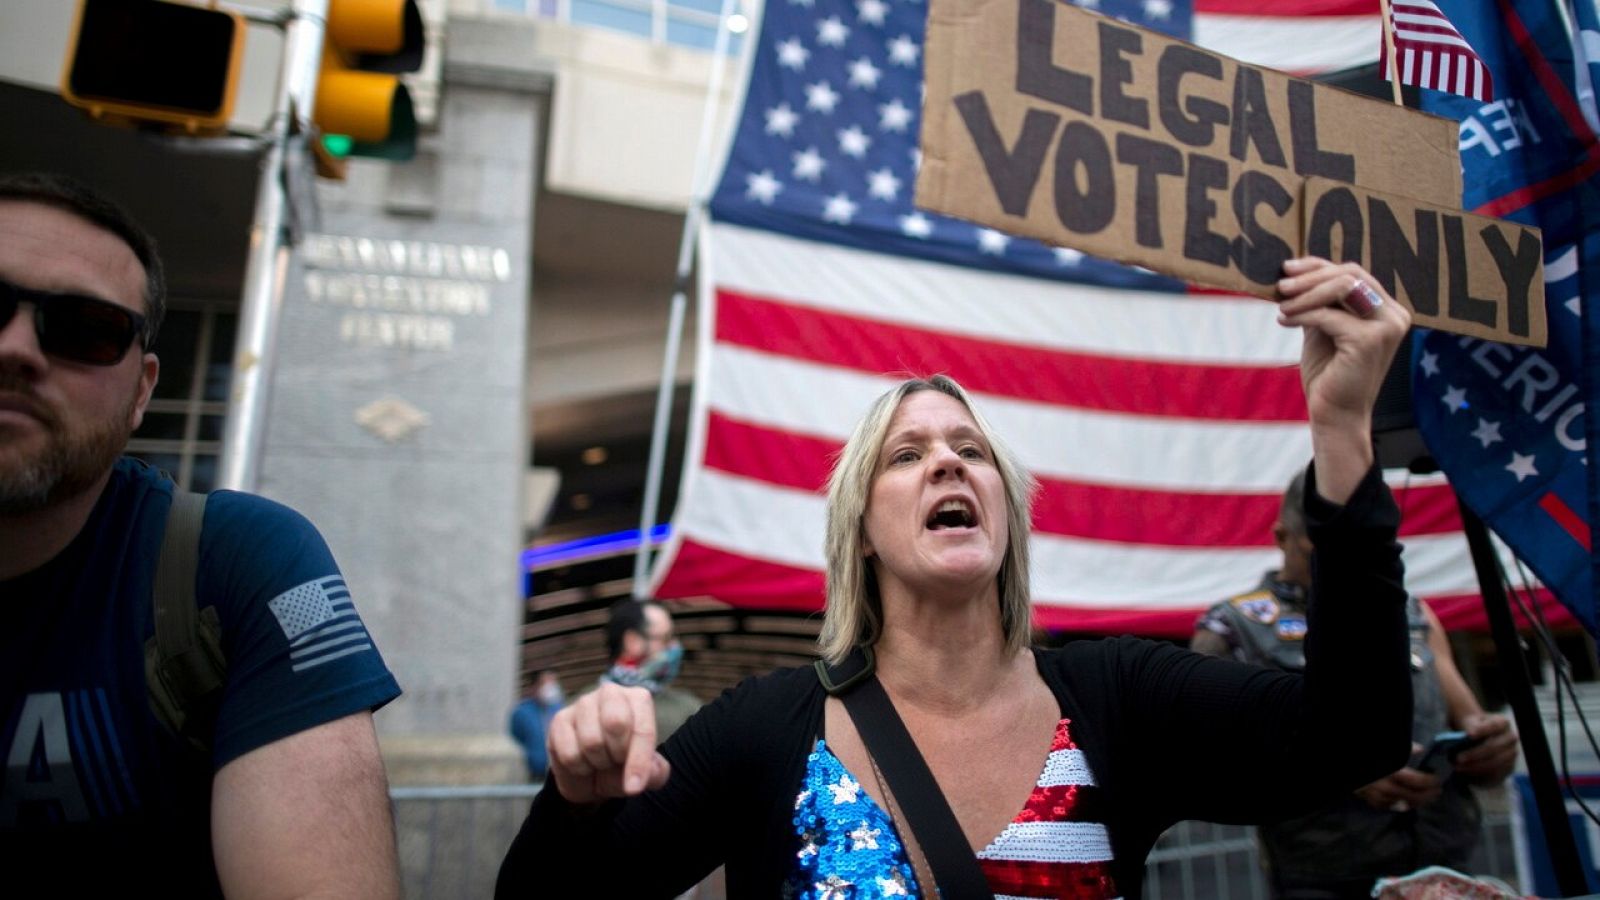 Una seguidora de Trump reclama que se contabilicen "solo los votos legales"